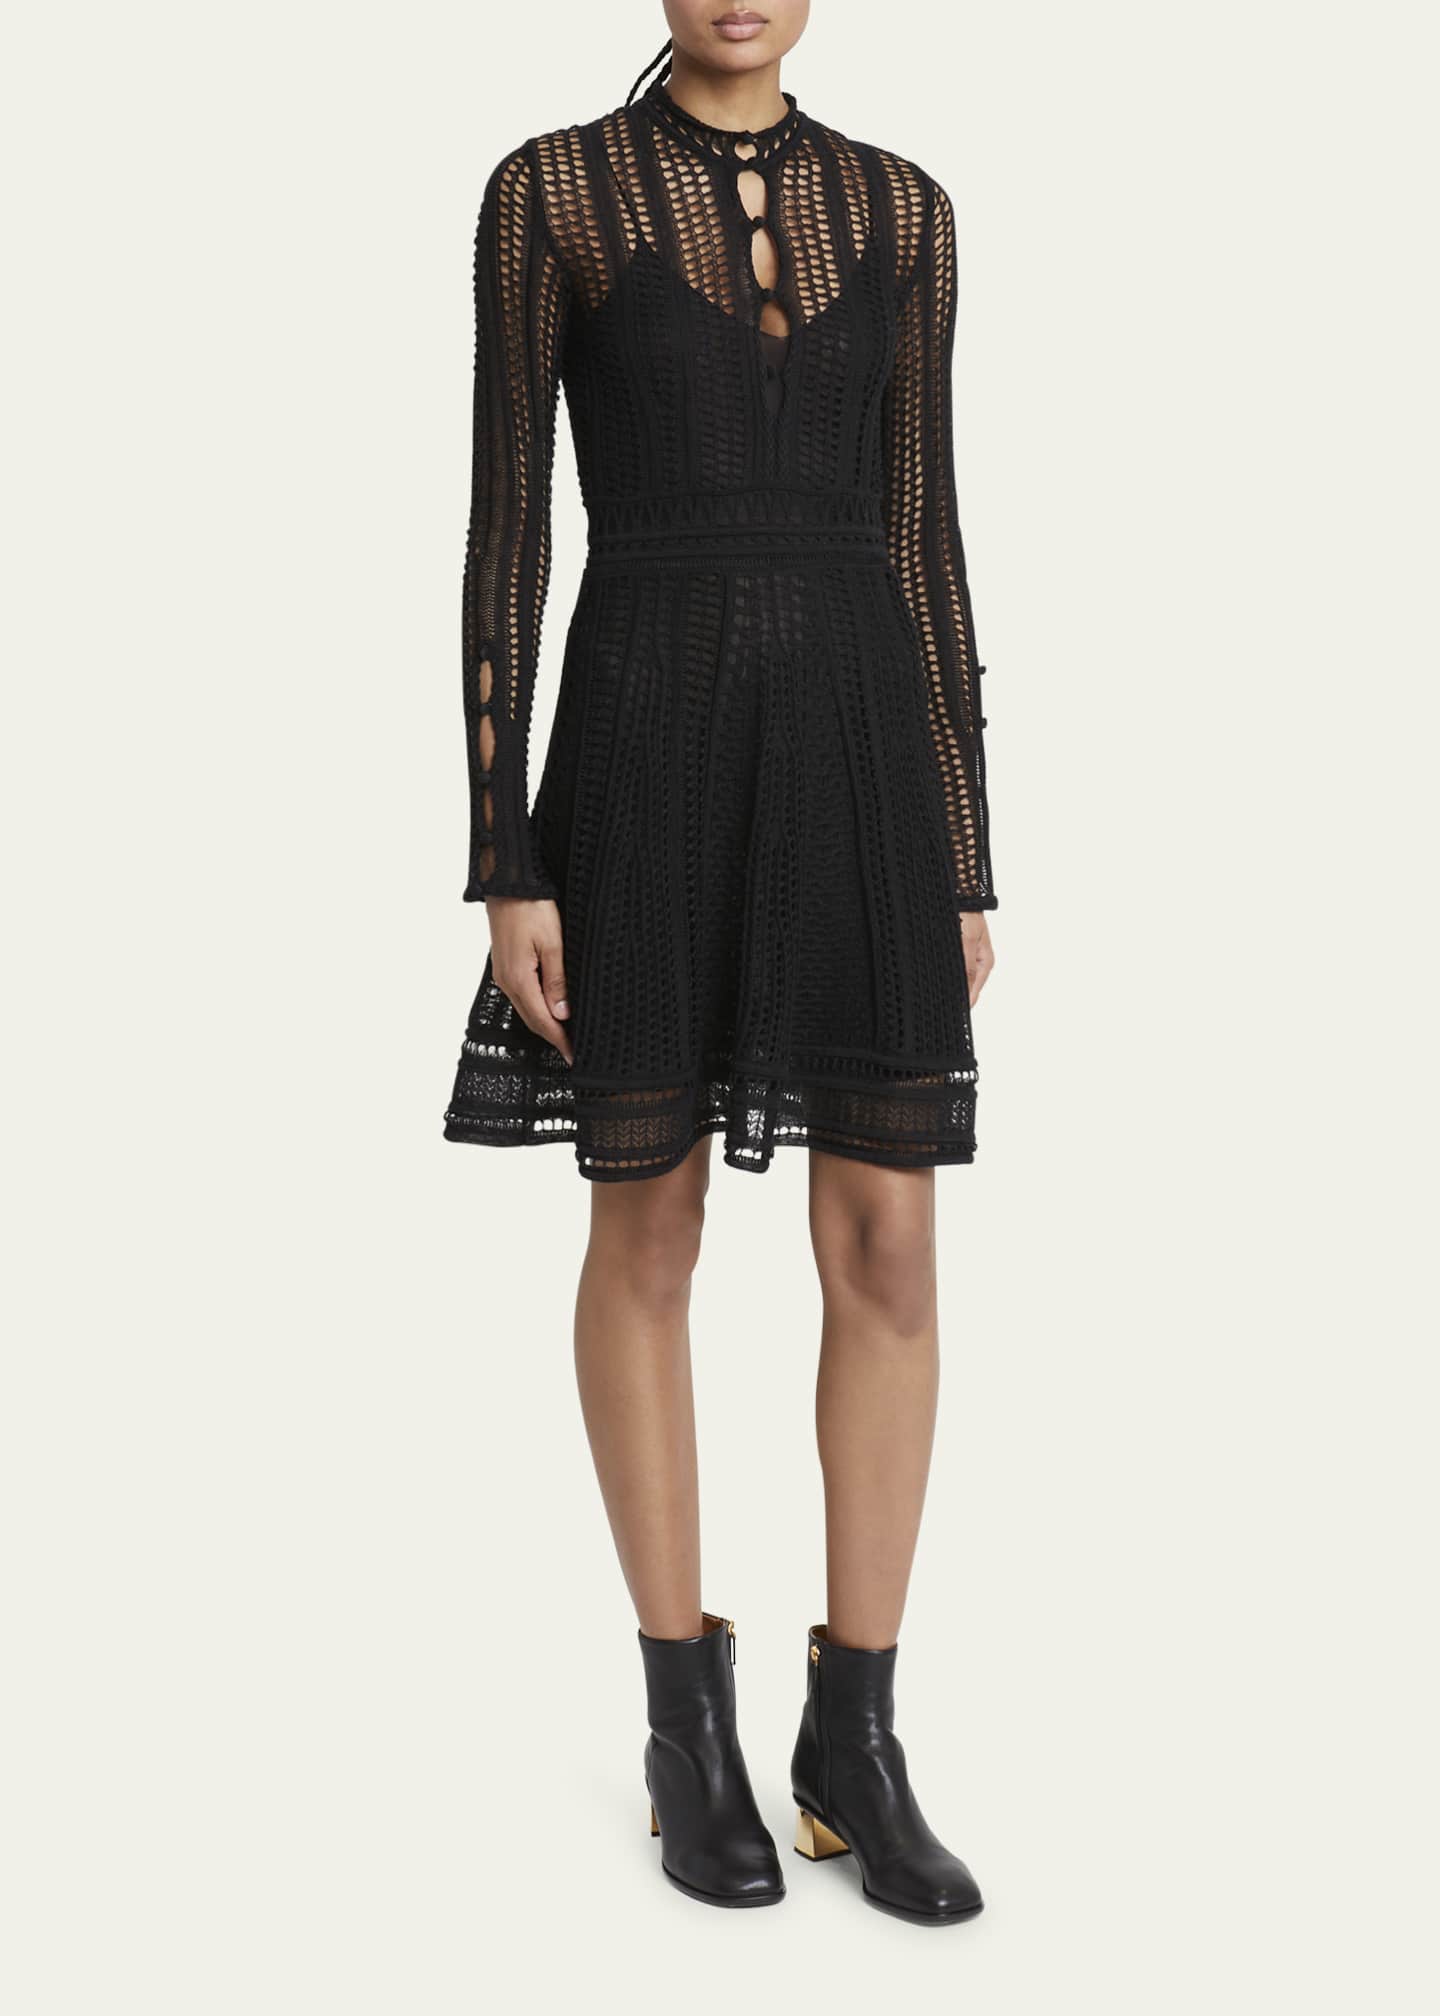 Chloe Silk Lace Knit Mini Dress - Bergdorf Goodman